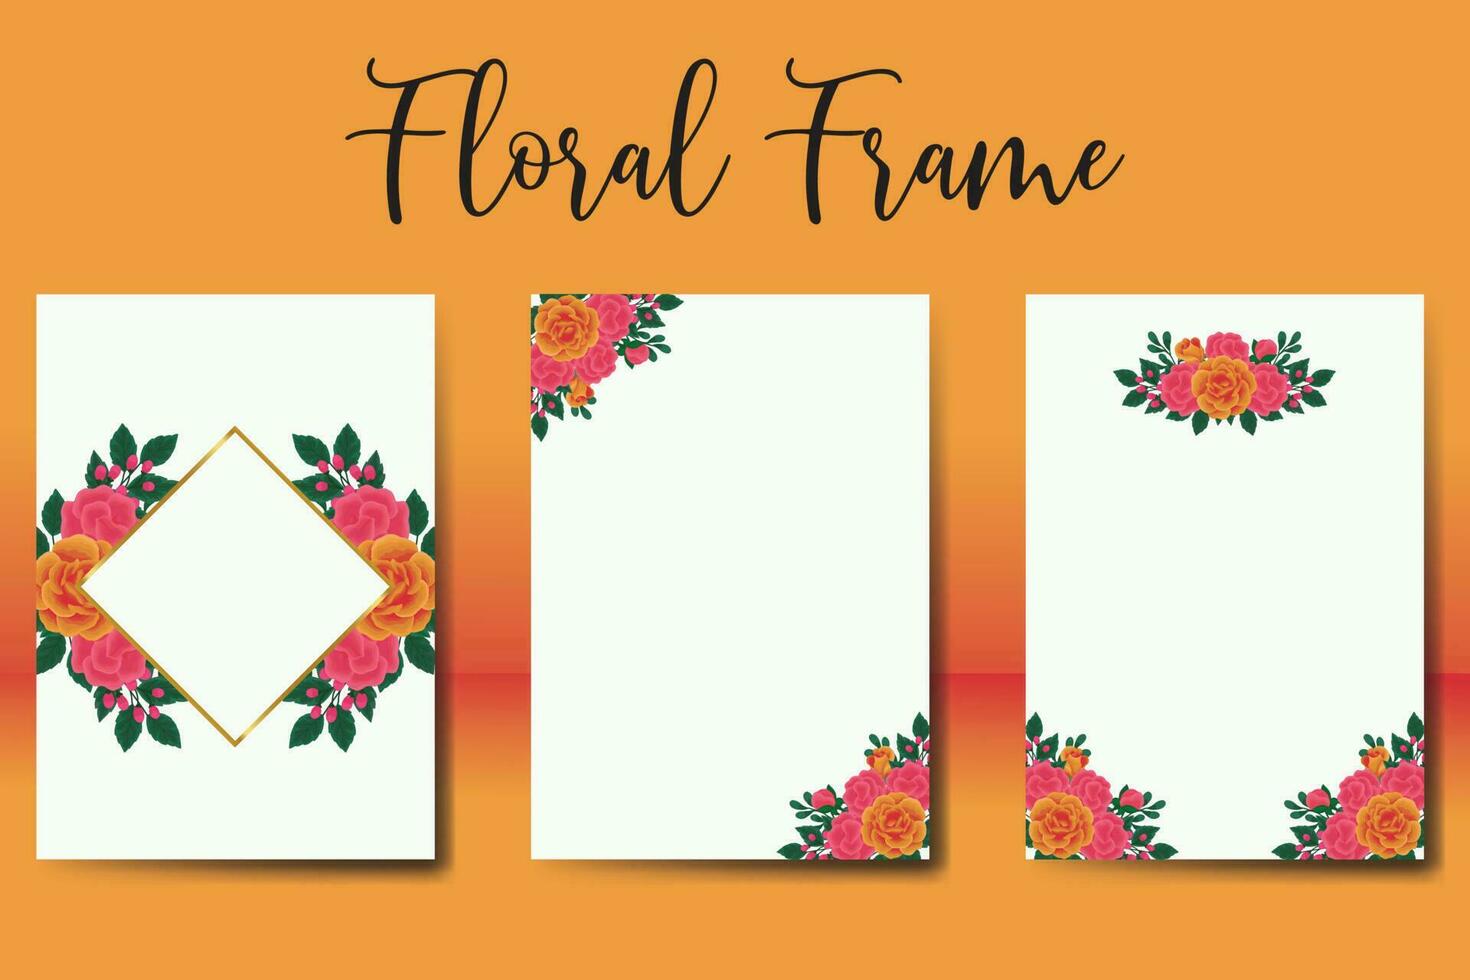 Boda invitación marco colocar, floral acuarela digital mano dibujado naranja Rosa flor diseño invitación tarjeta modelo vector